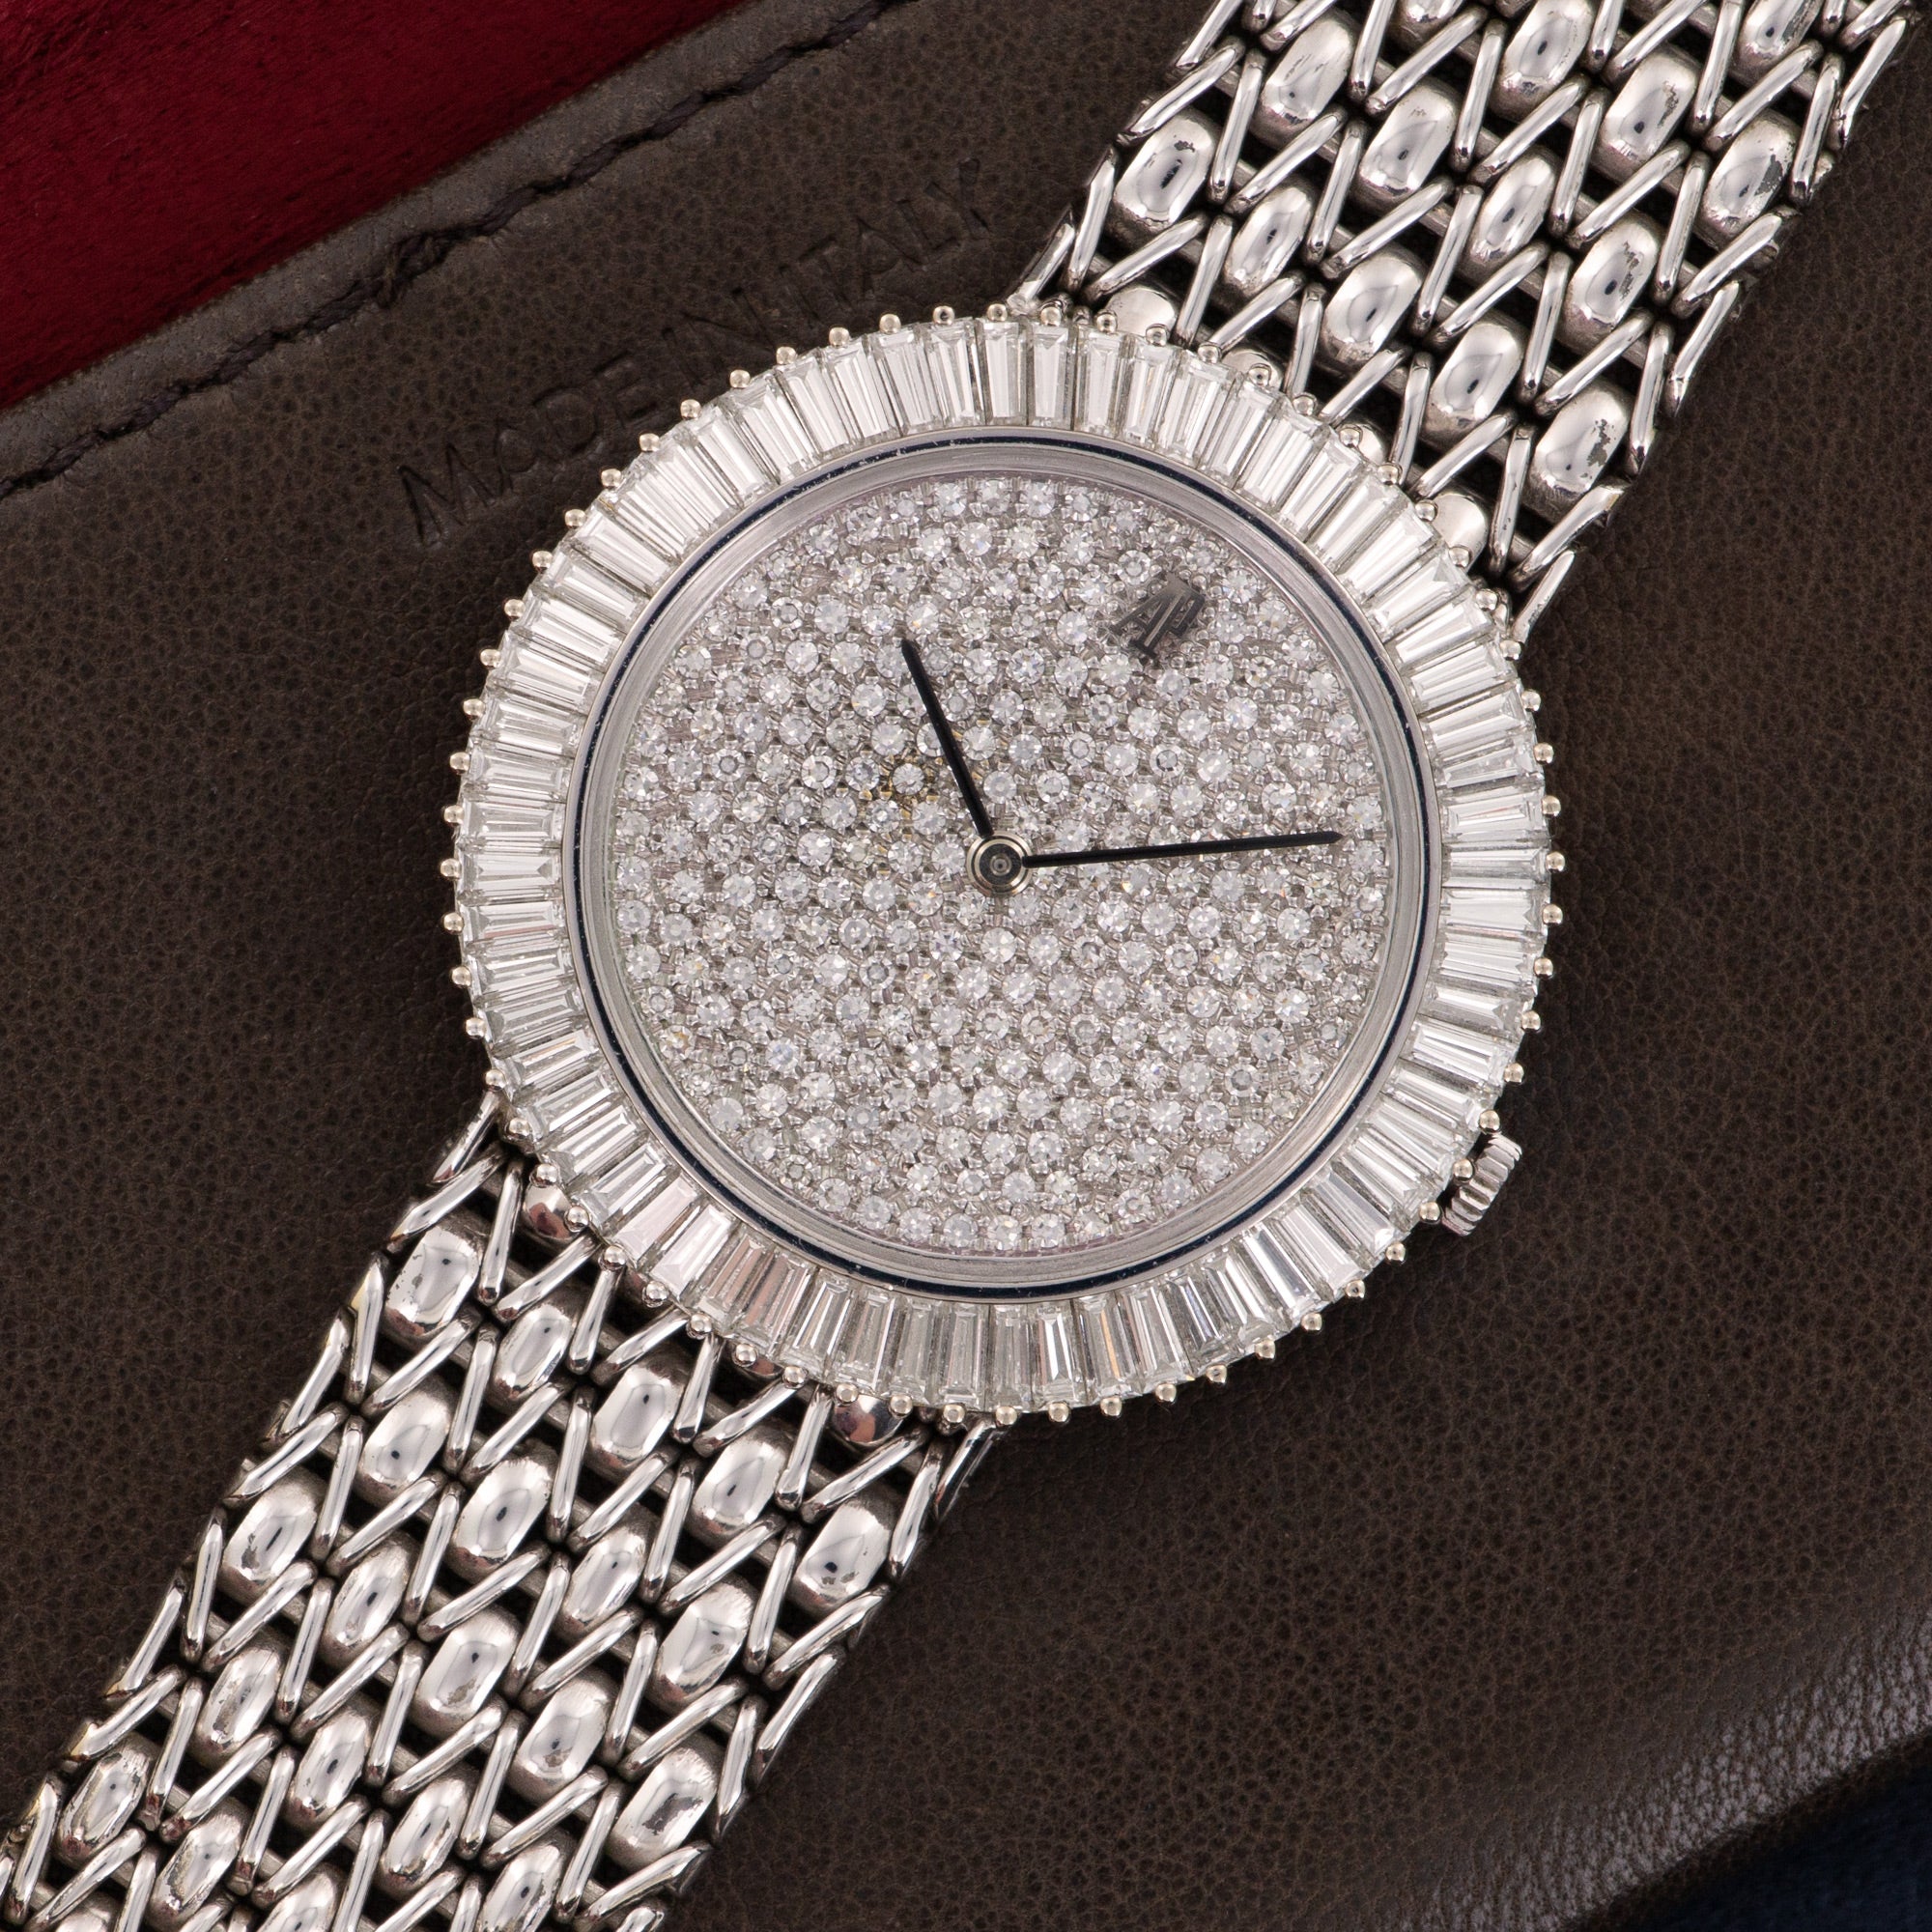 Audemars Piguet - Audemars Piguet White Gold Diamond Bracelet Watch - The Keystone Watches